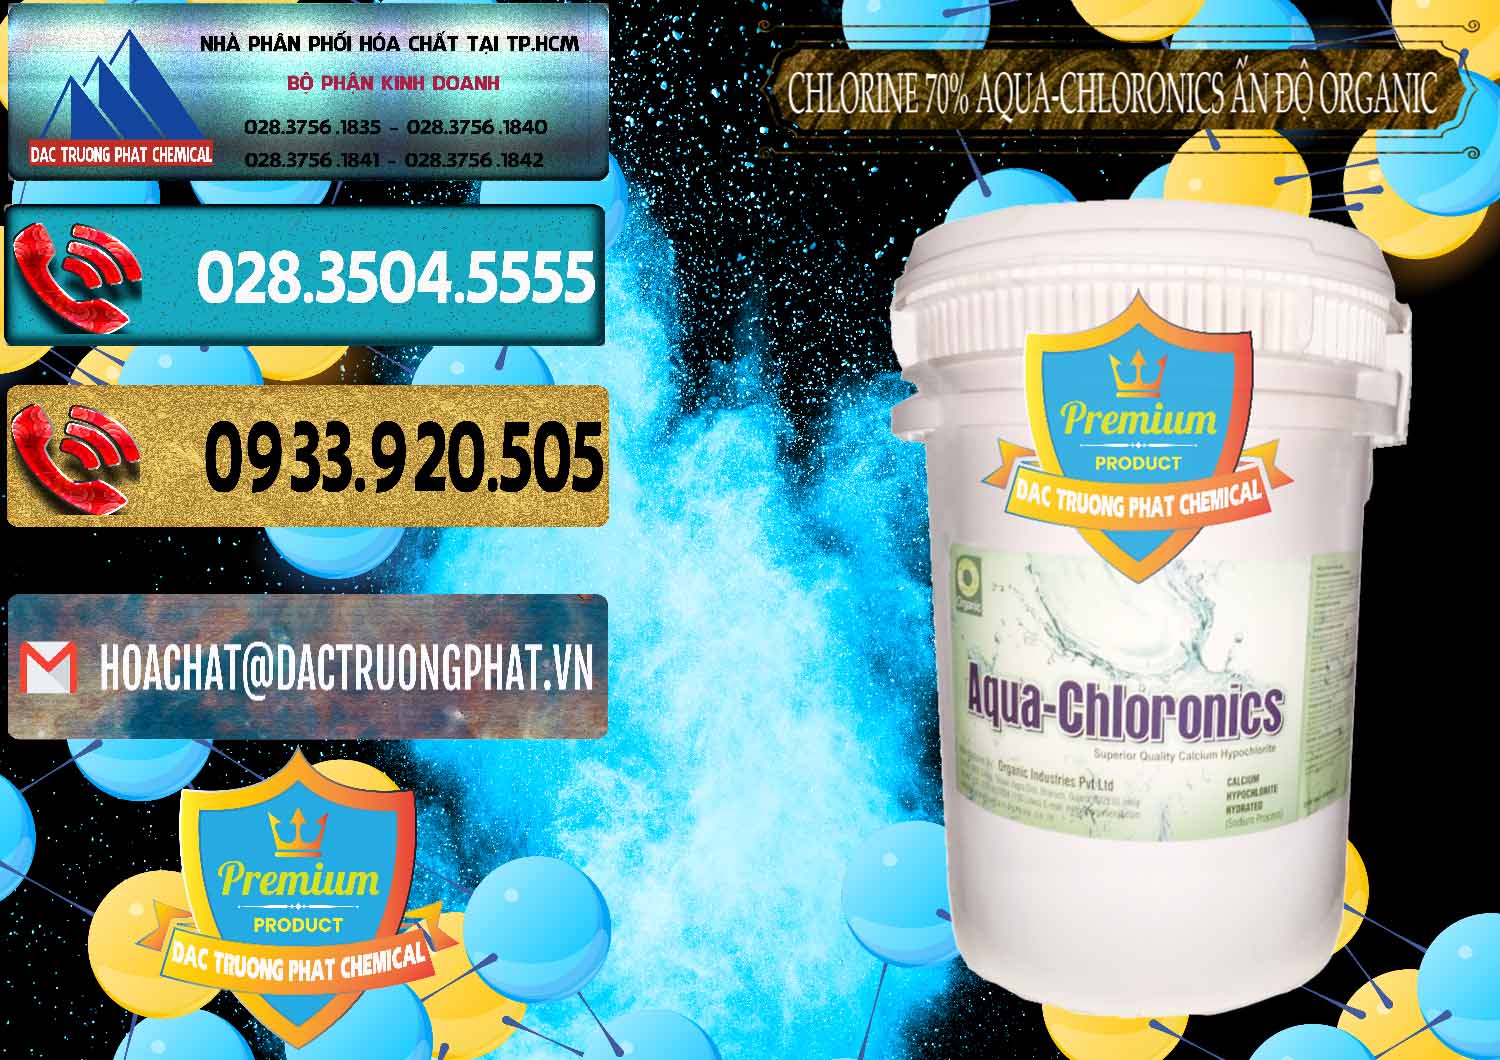 Nơi chuyên cung ứng và bán Chlorine – Clorin 70% Aqua-Chloronics Ấn Độ Organic India - 0211 - Đơn vị cung cấp _ kinh doanh hóa chất tại TP.HCM - hoachatdetnhuom.com